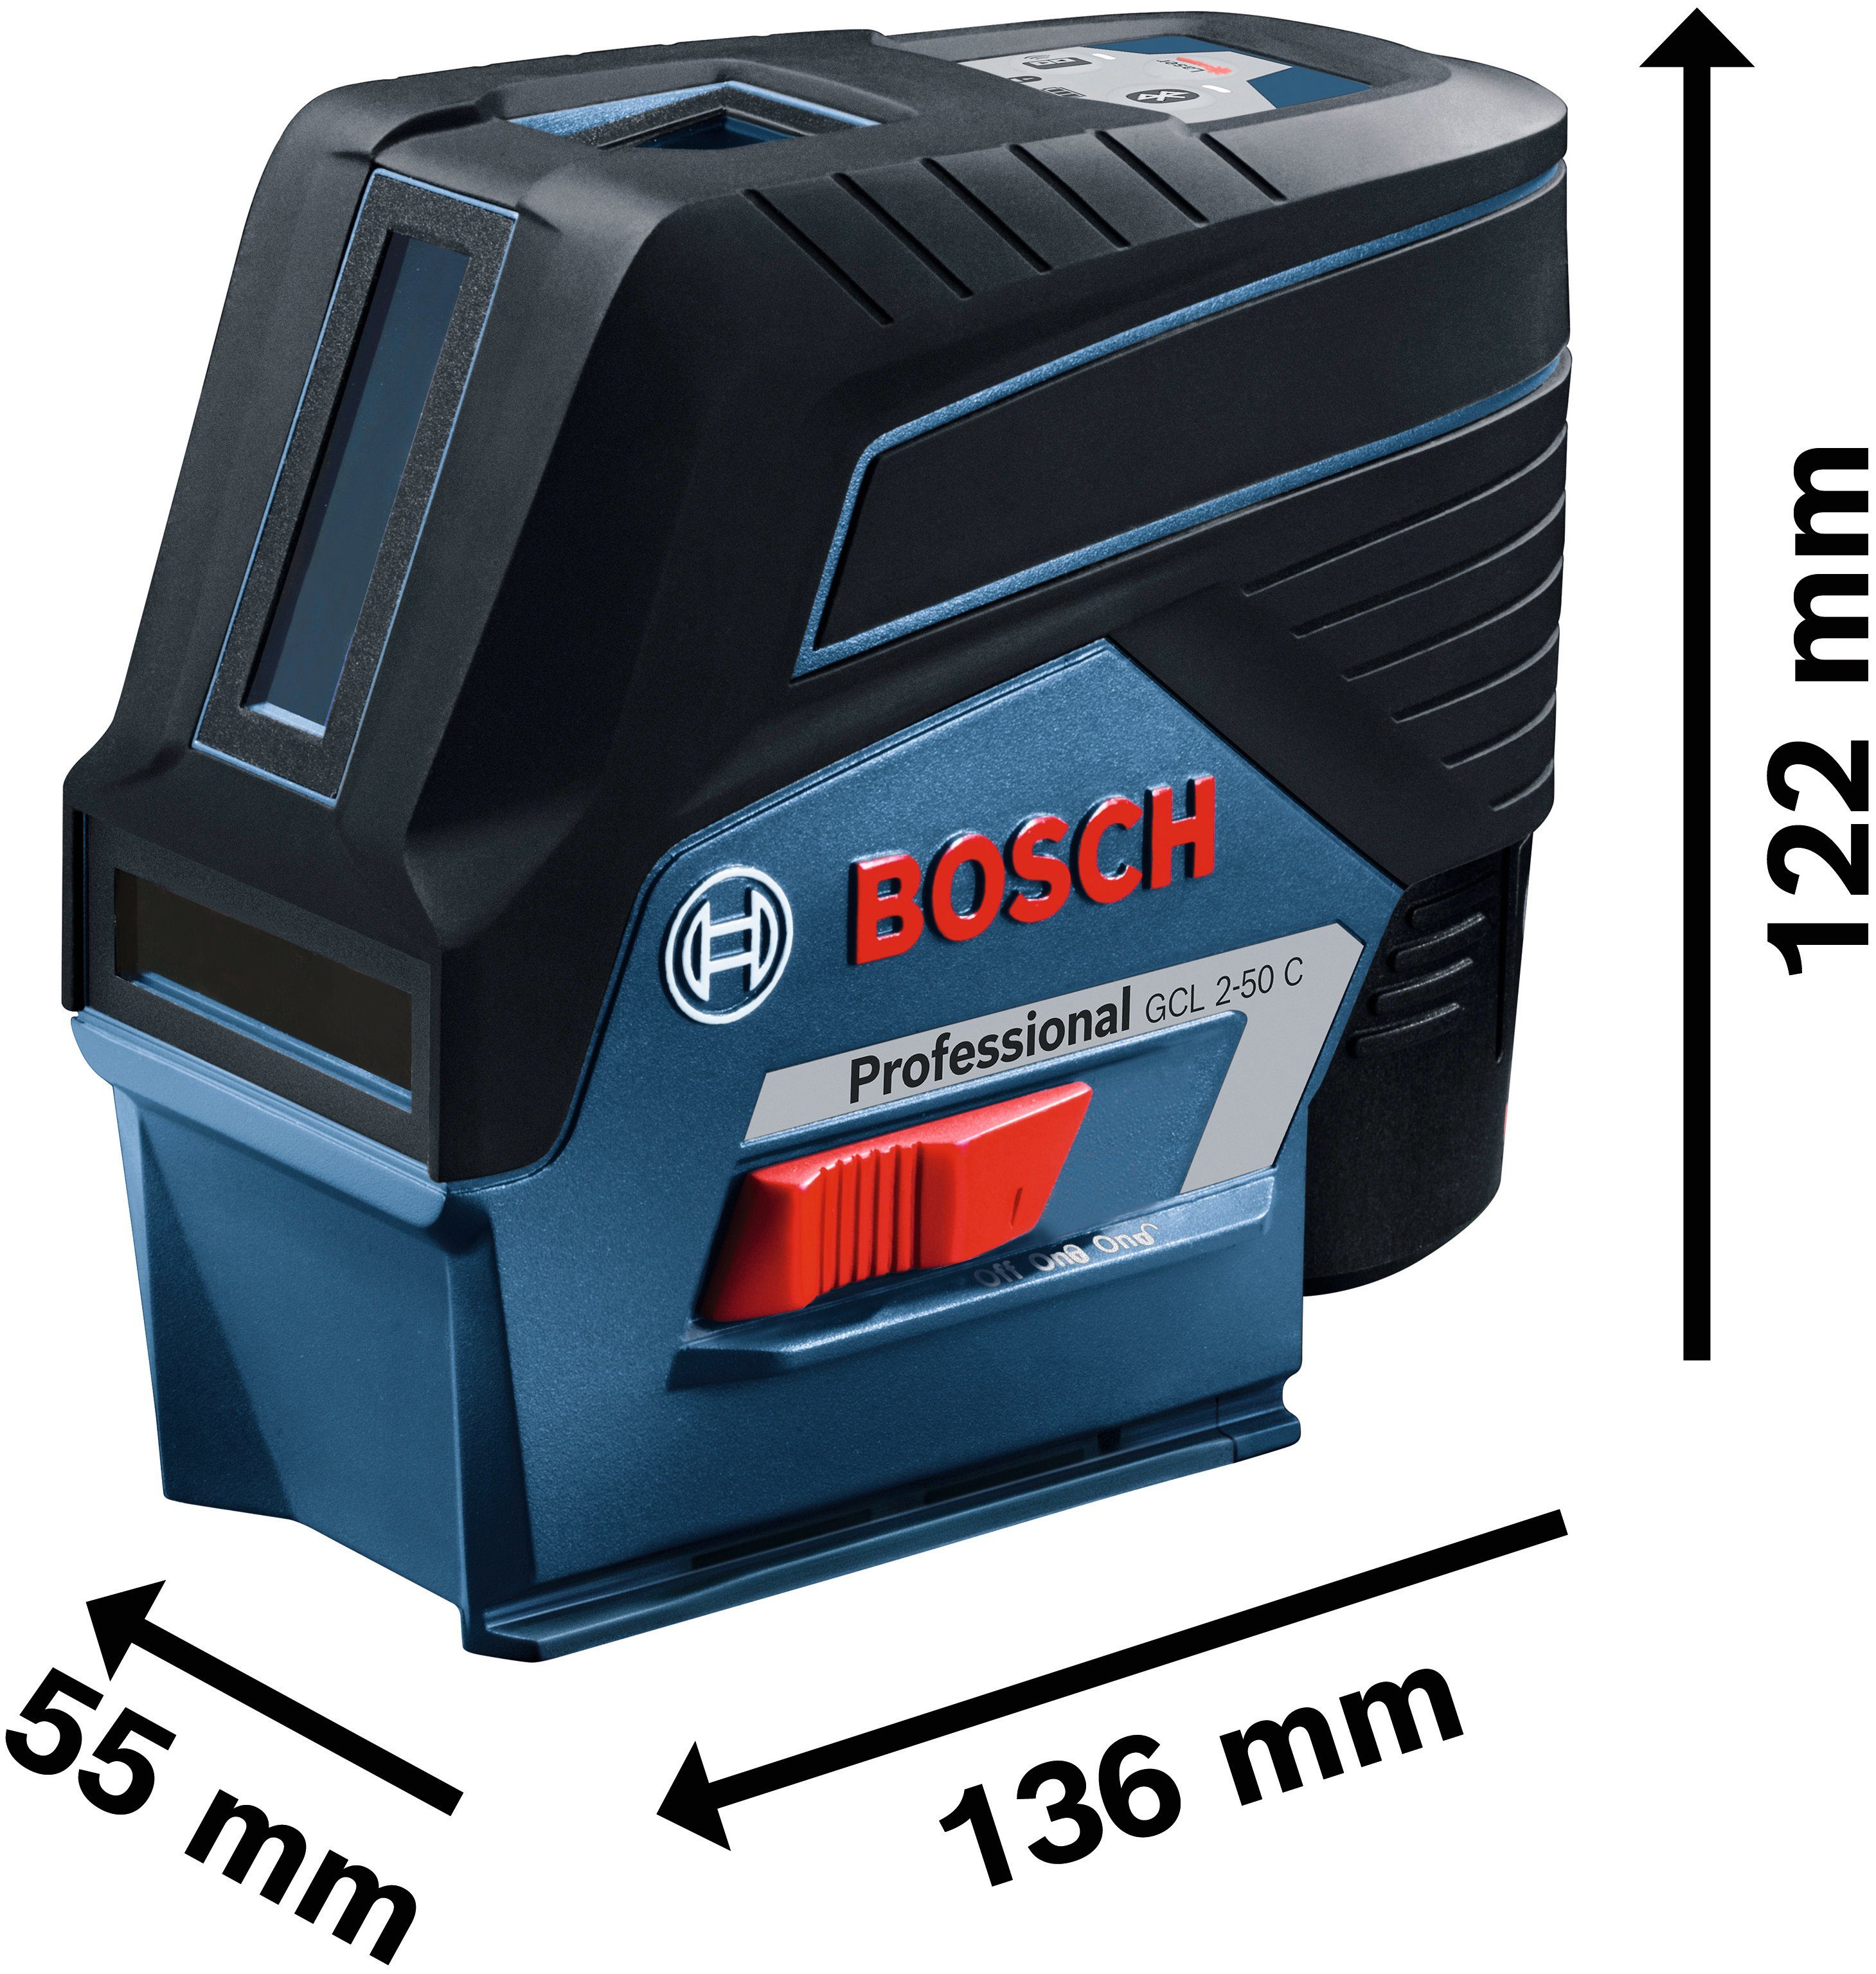 Bosch Professional Punkt- und Linienlaser Professional m 20 Ø Baustativ-Set, Arbeitsbereich: GCL (Set), 2-50 C